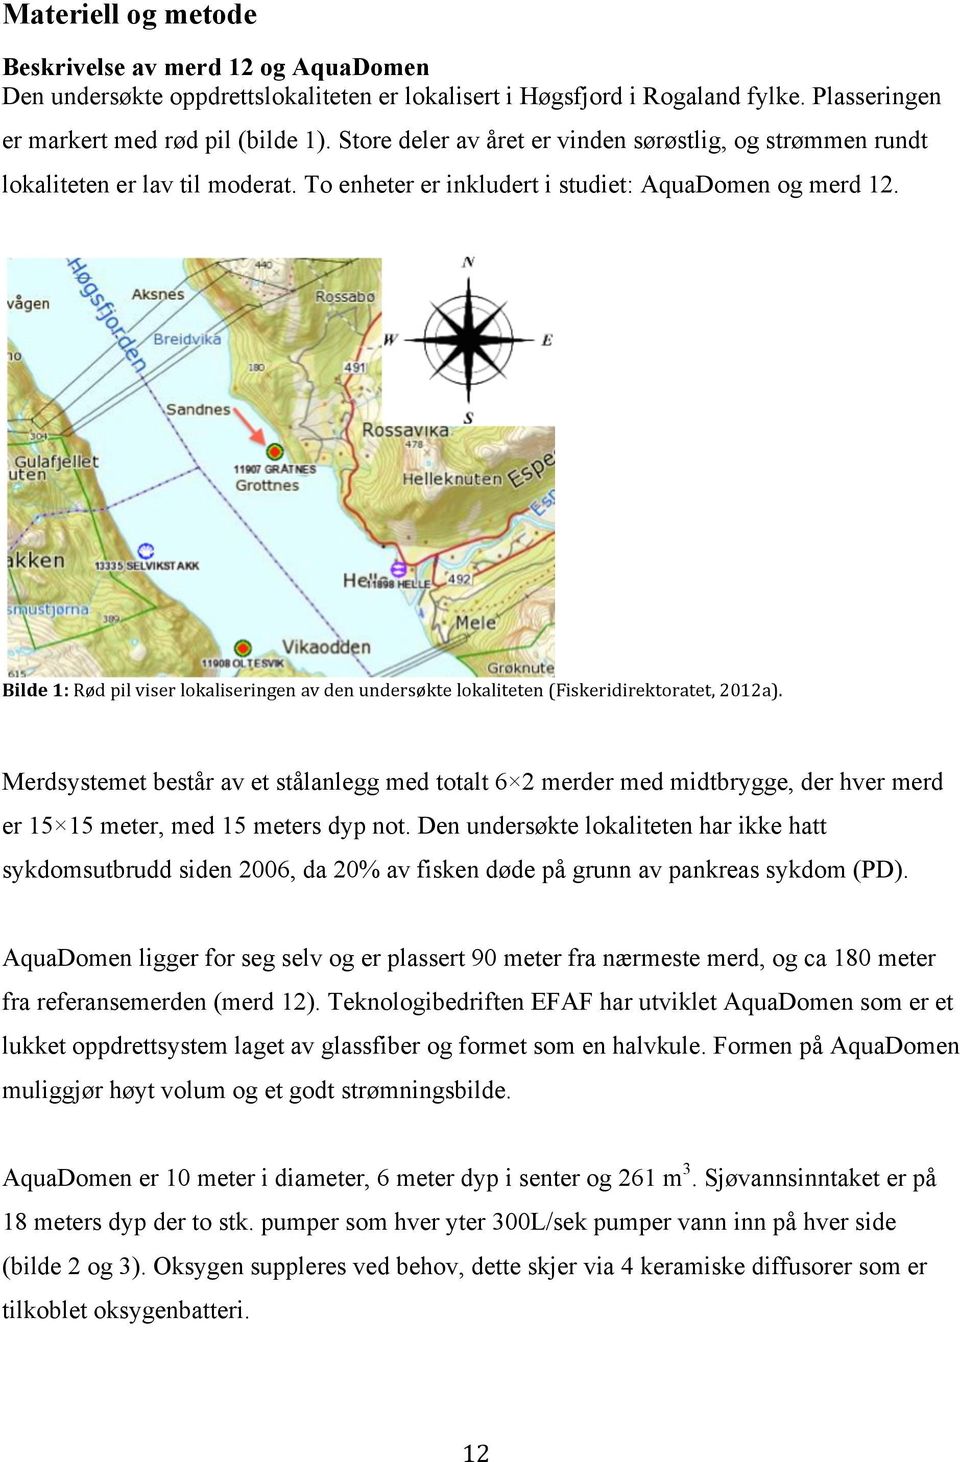 Bilde 1: Rød pil viser lokaliseringen av den undersøkte lokaliteten (Fiskeridirektoratet, 2012a).